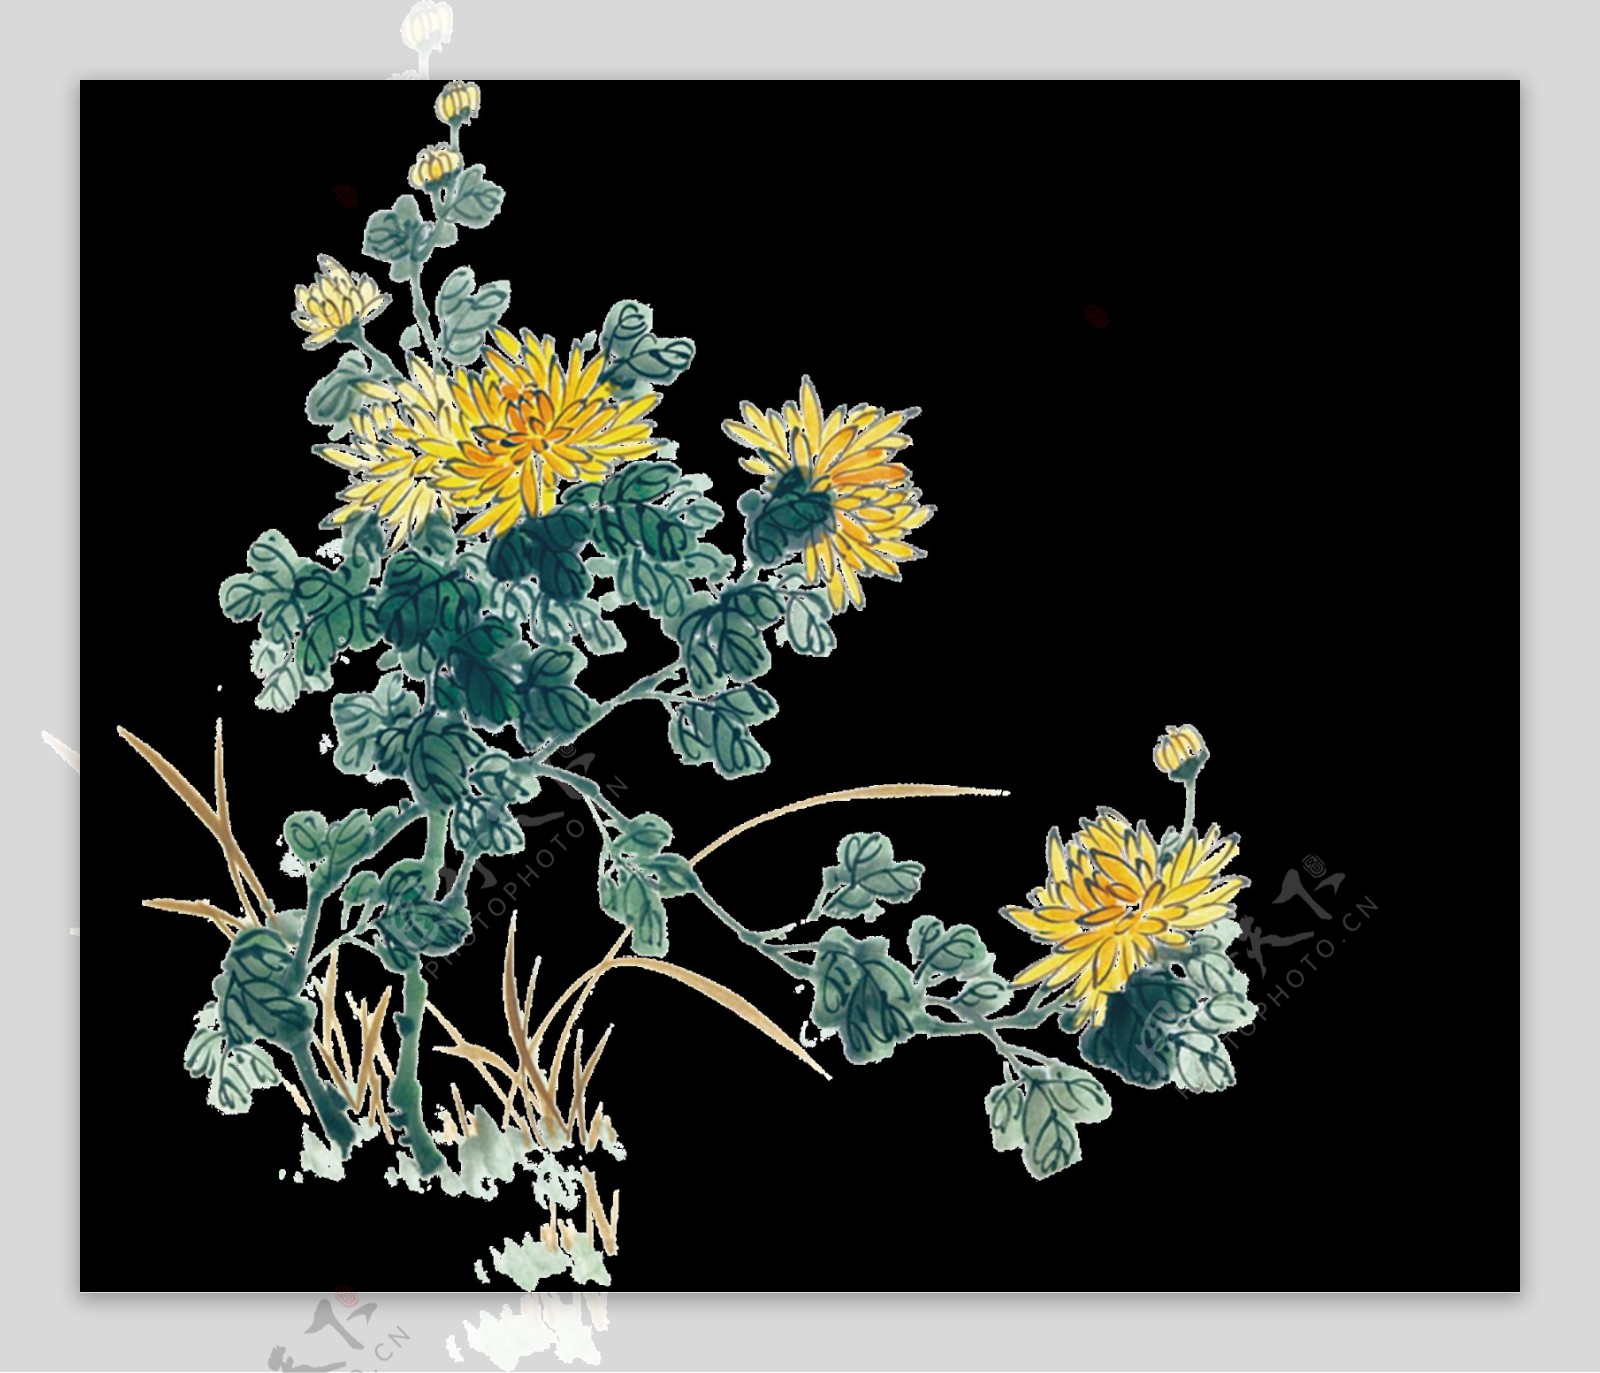 清新写实风格手绘菊花装饰元素